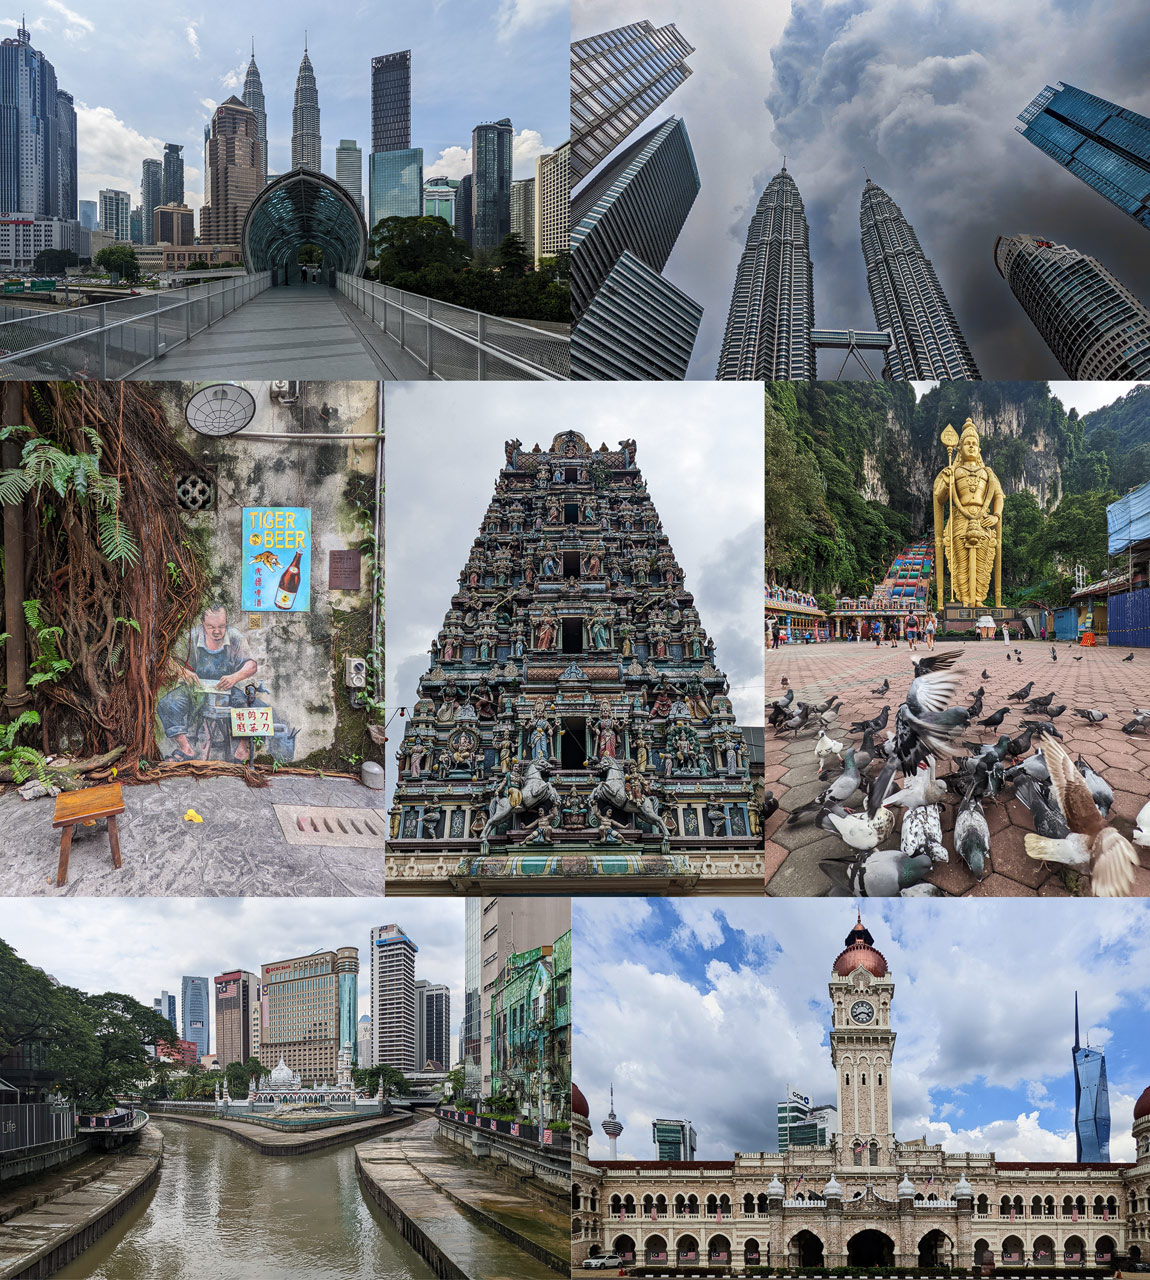 Kuala Lumpur Photo Spots